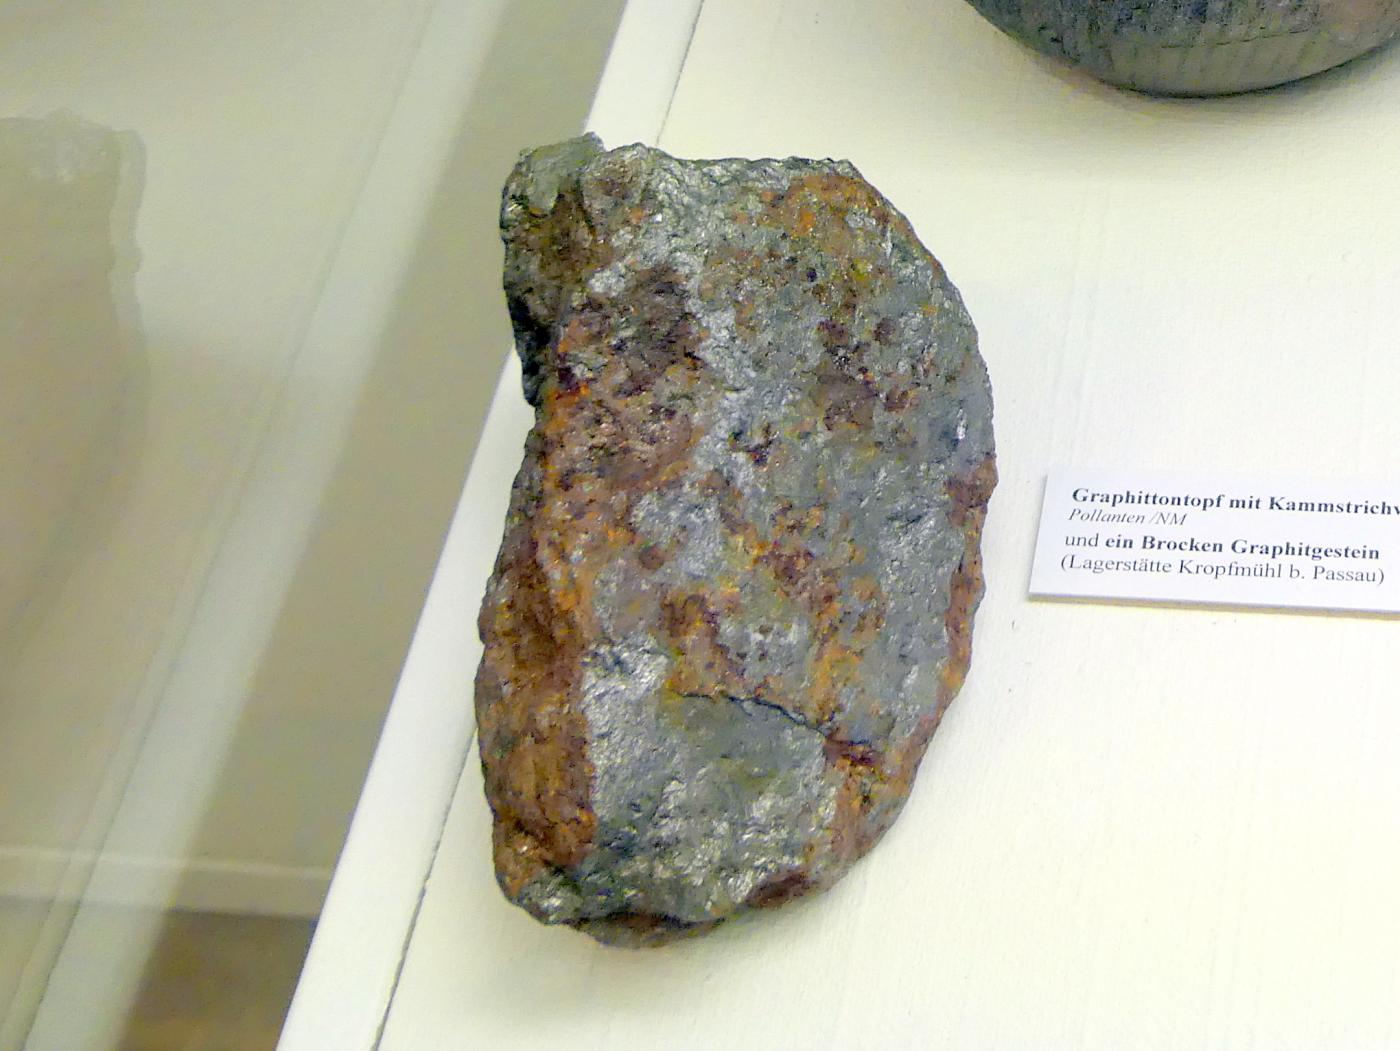 Ein Brocken Graphitstein, Spätlatènezeit D, 700 - 100 v. Chr., Bild 1/2